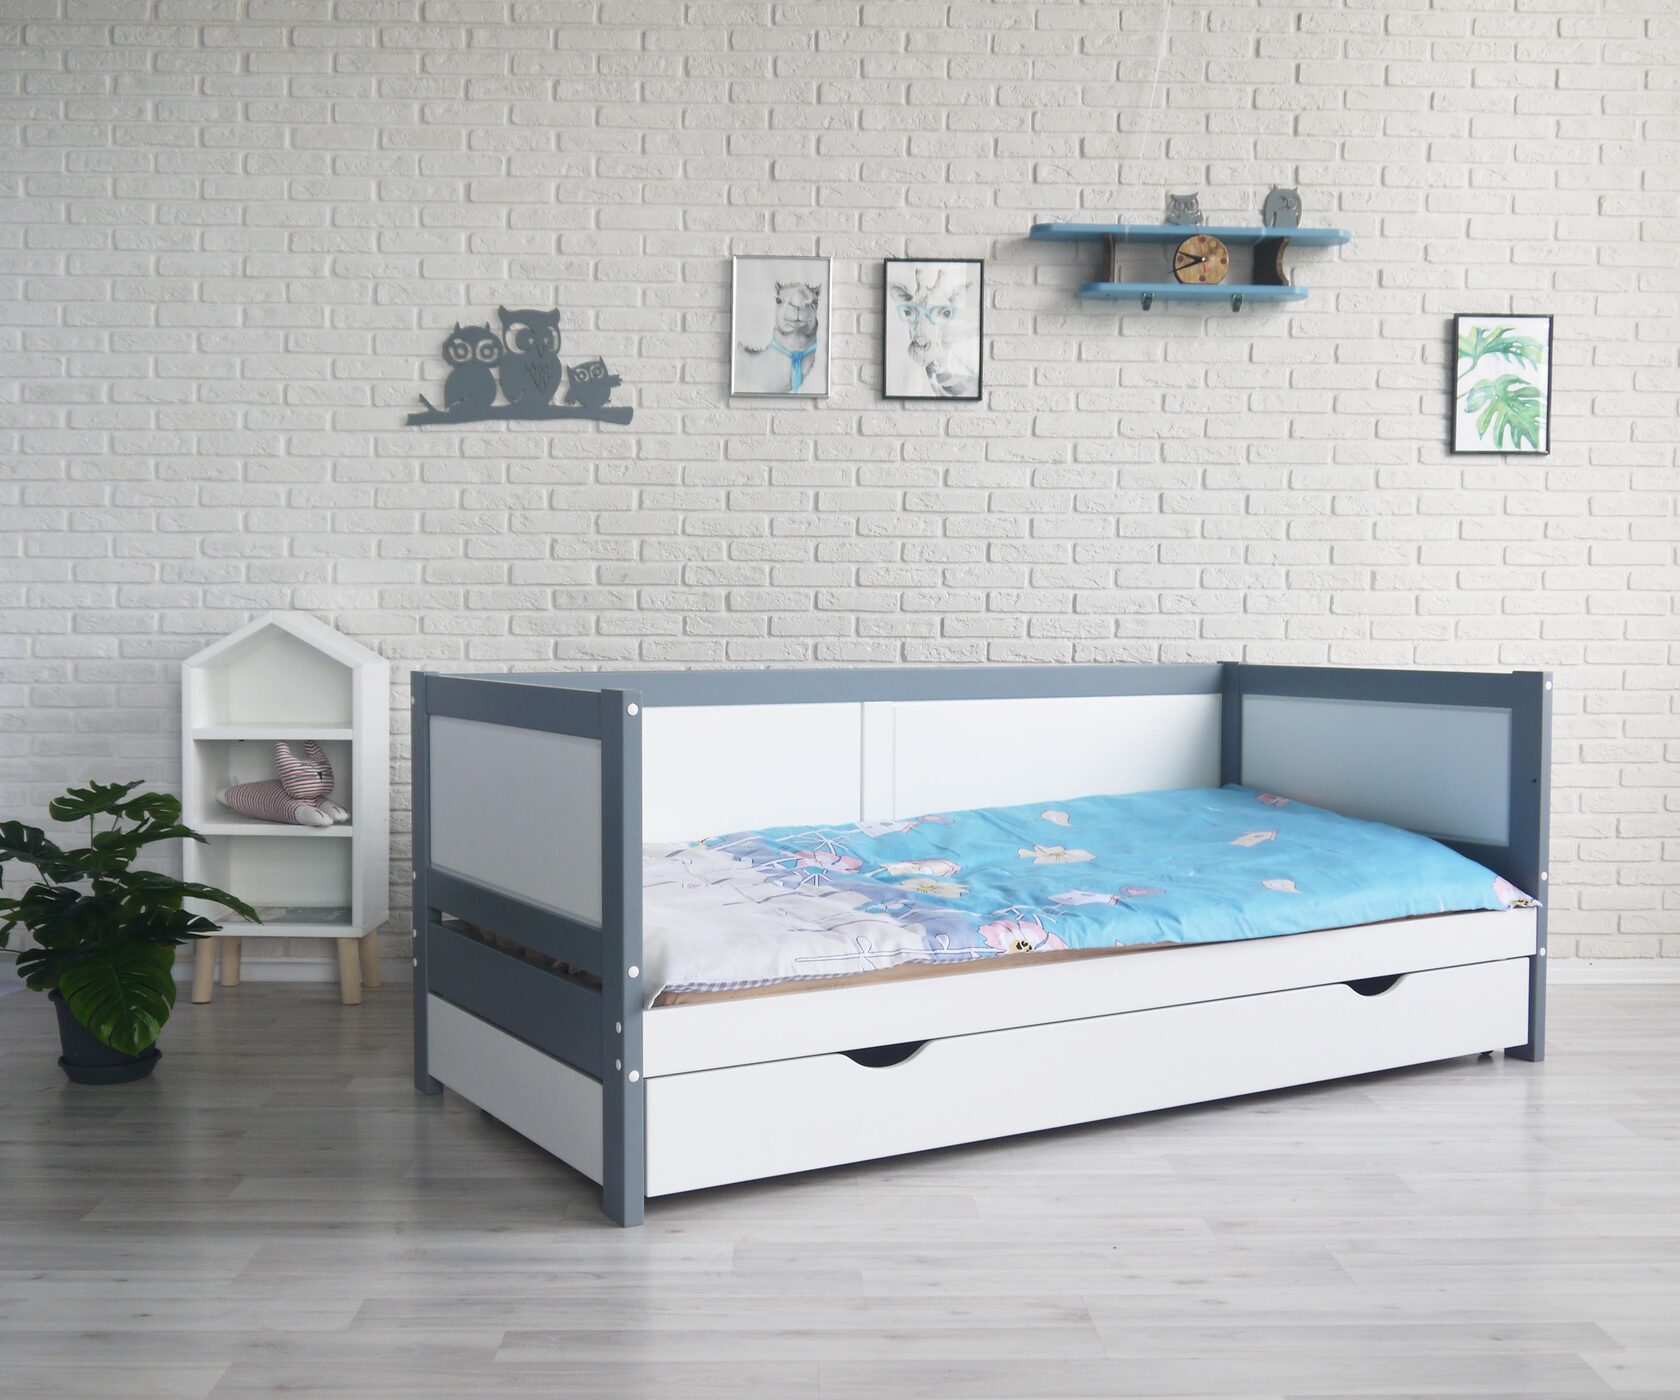 Подростковые кровати: модели с удобствами и стильным дизайном